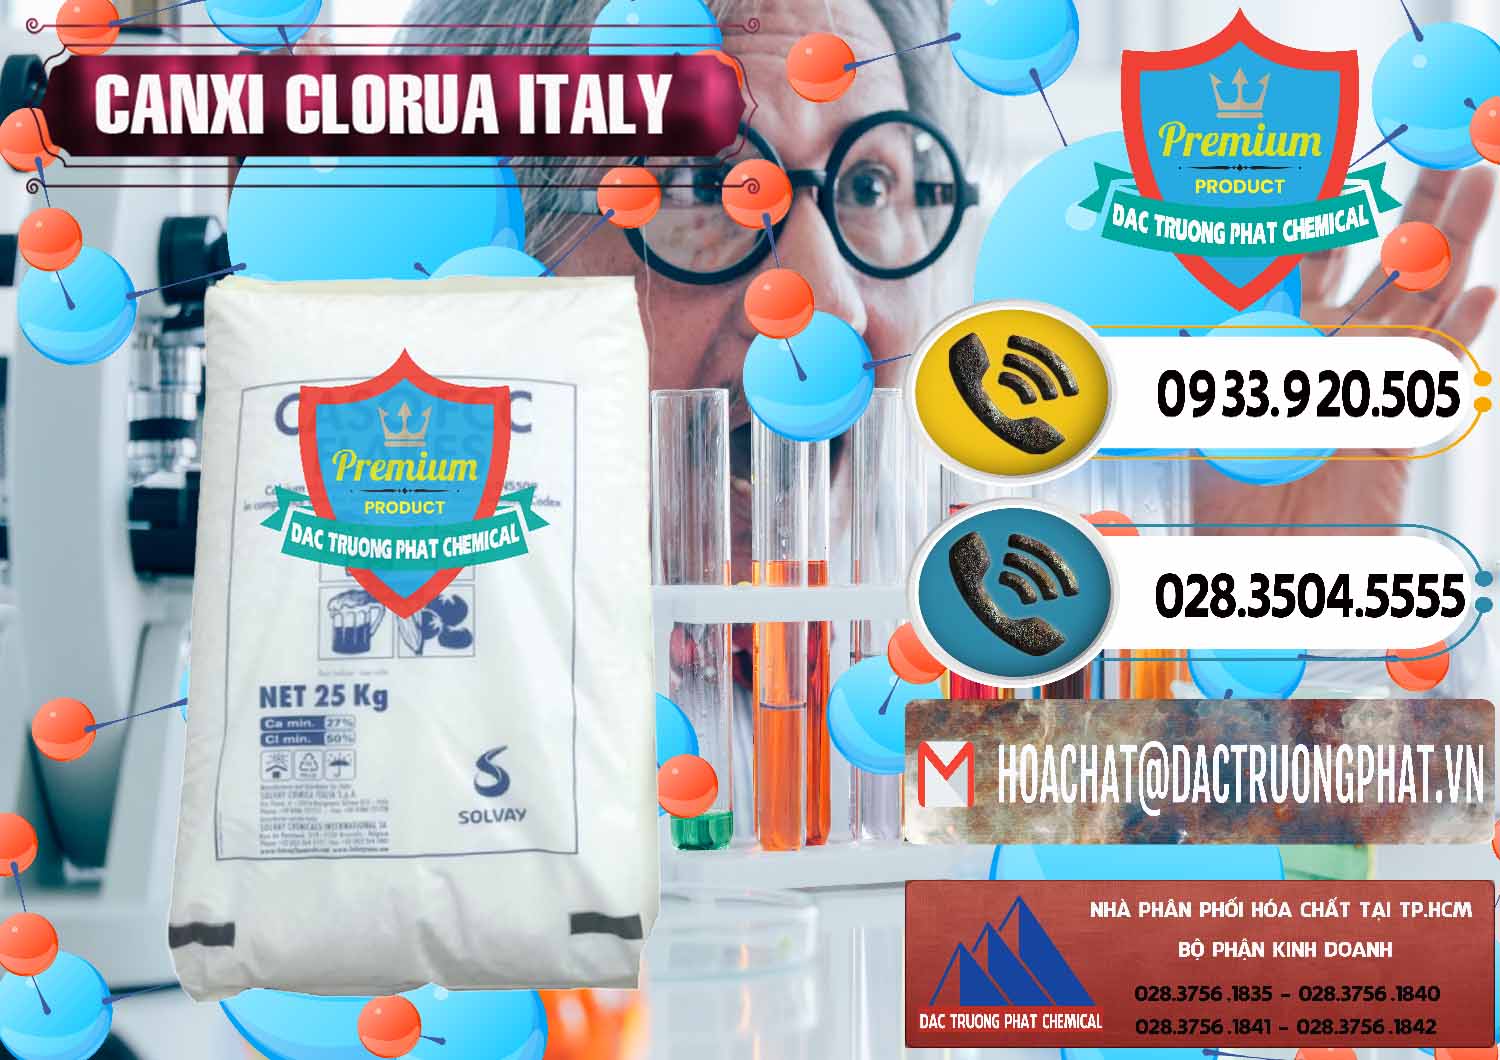 Cty chuyên bán ( cung cấp ) CaCl2 – Canxi Clorua Food Grade Ý Italy - 0435 - Cung cấp - bán hóa chất tại TP.HCM - hoachatdetnhuom.vn